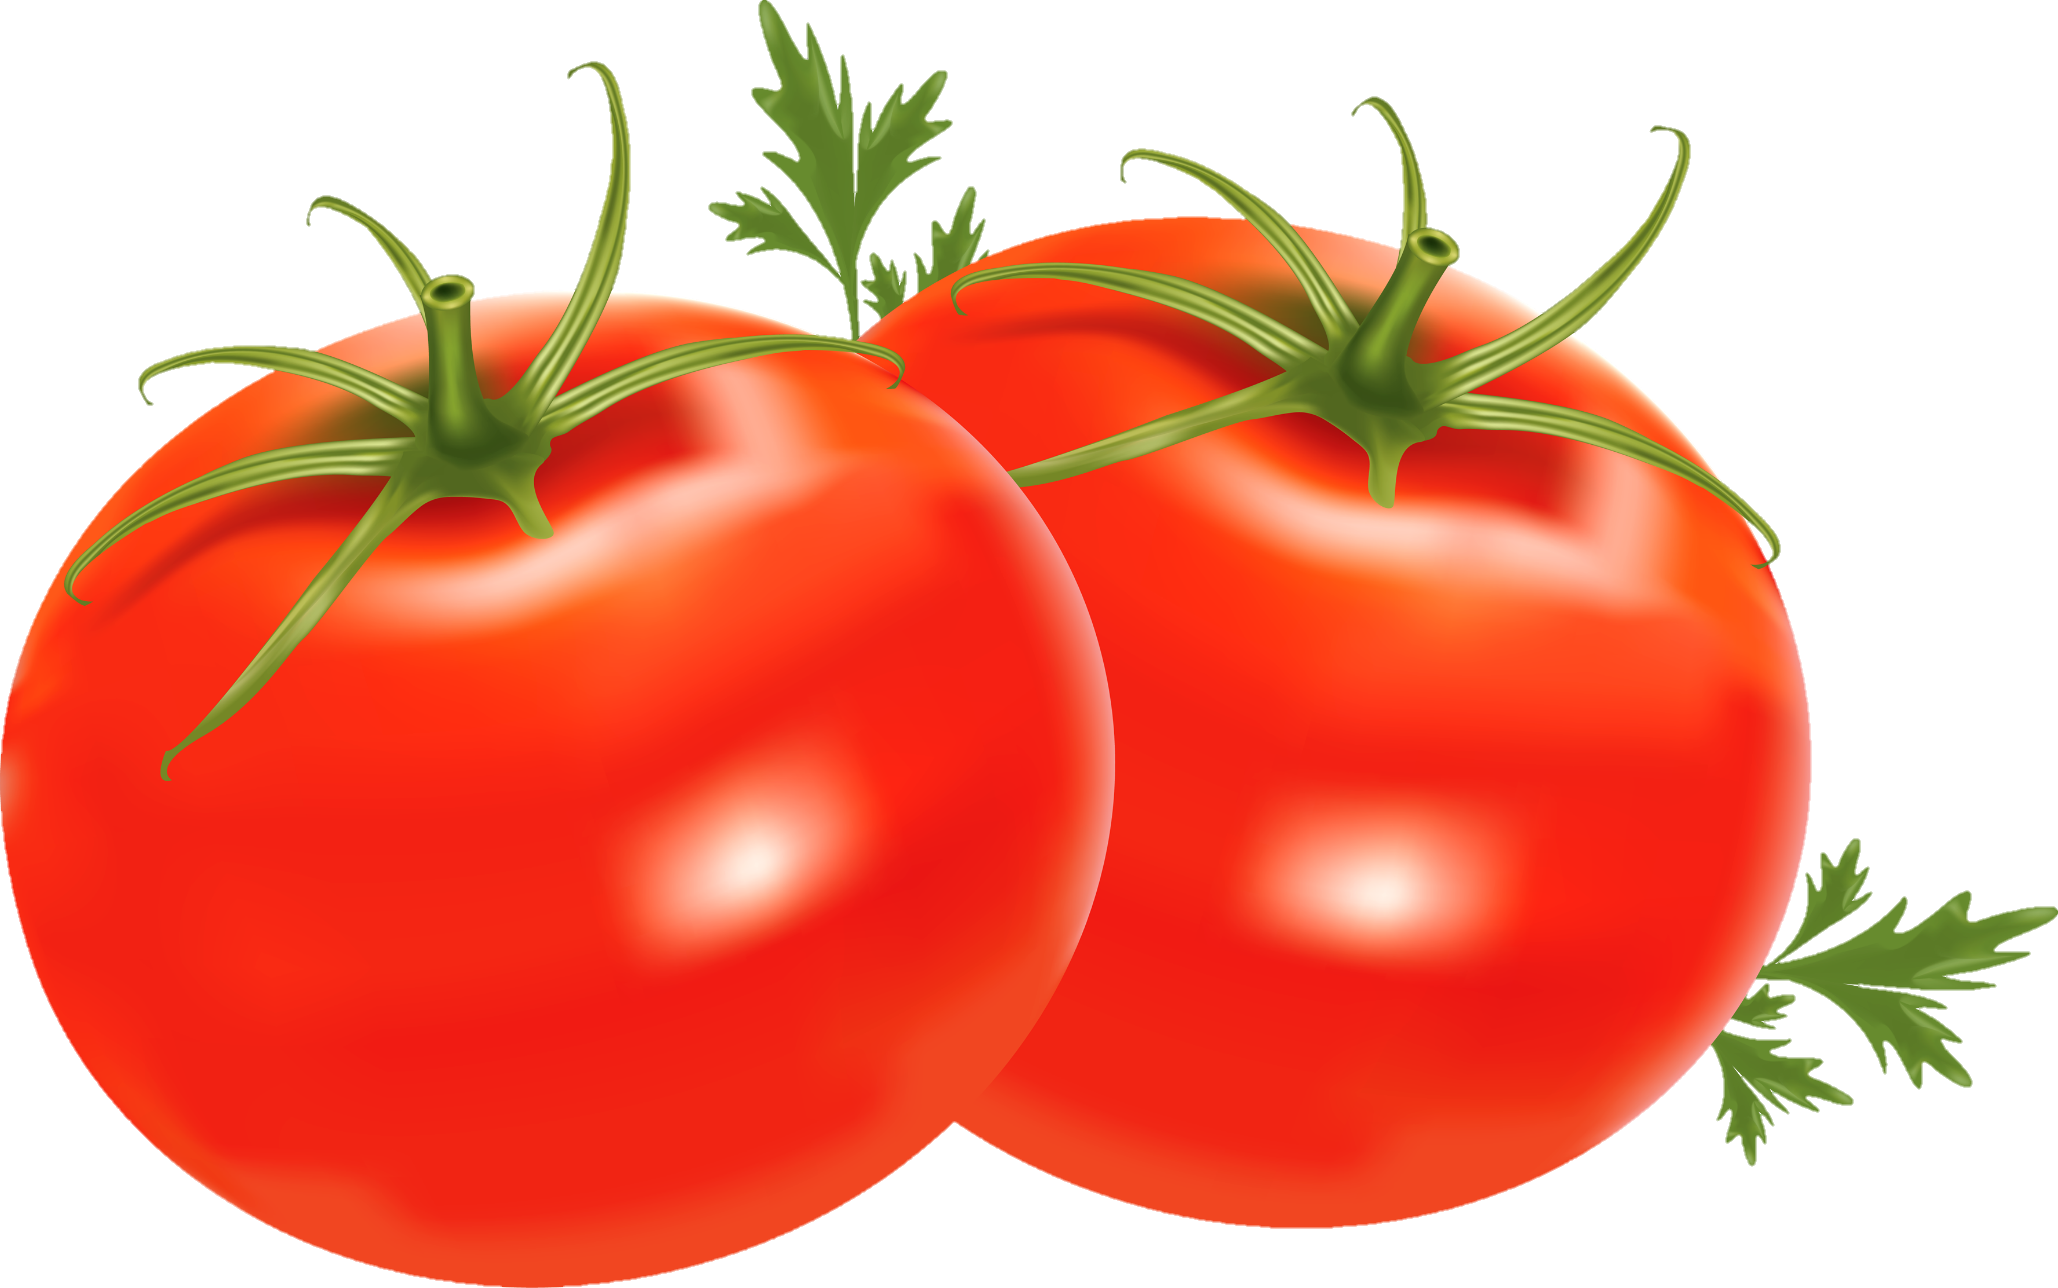 Tomato-6-1